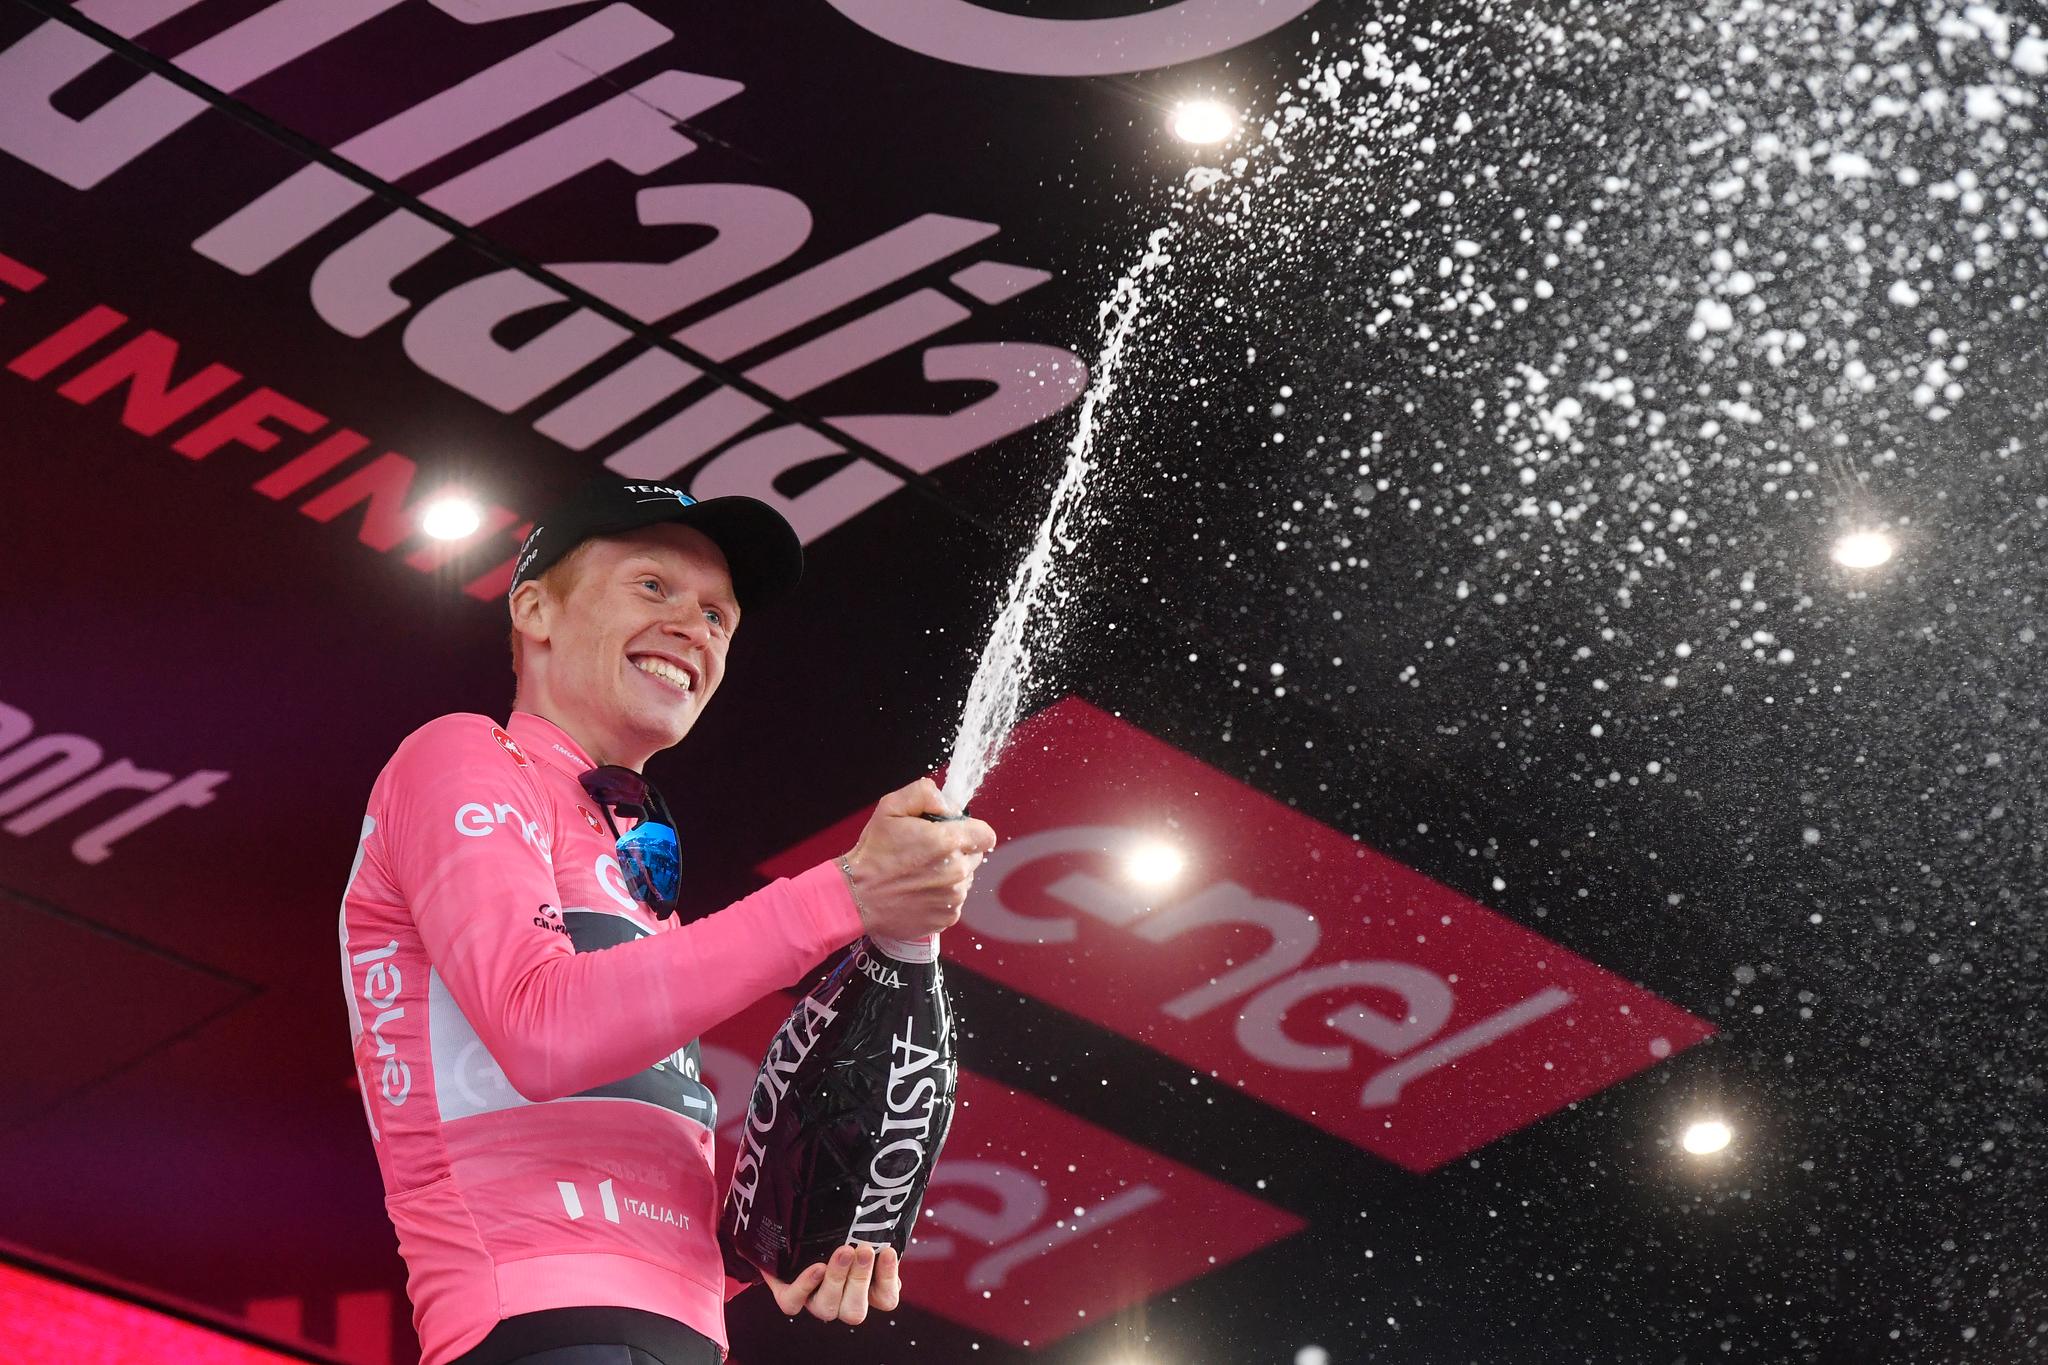 I TET: Andreas Leknessund leder fortsatt Giro d’Italia sammenlagt etter fredagens etappe.